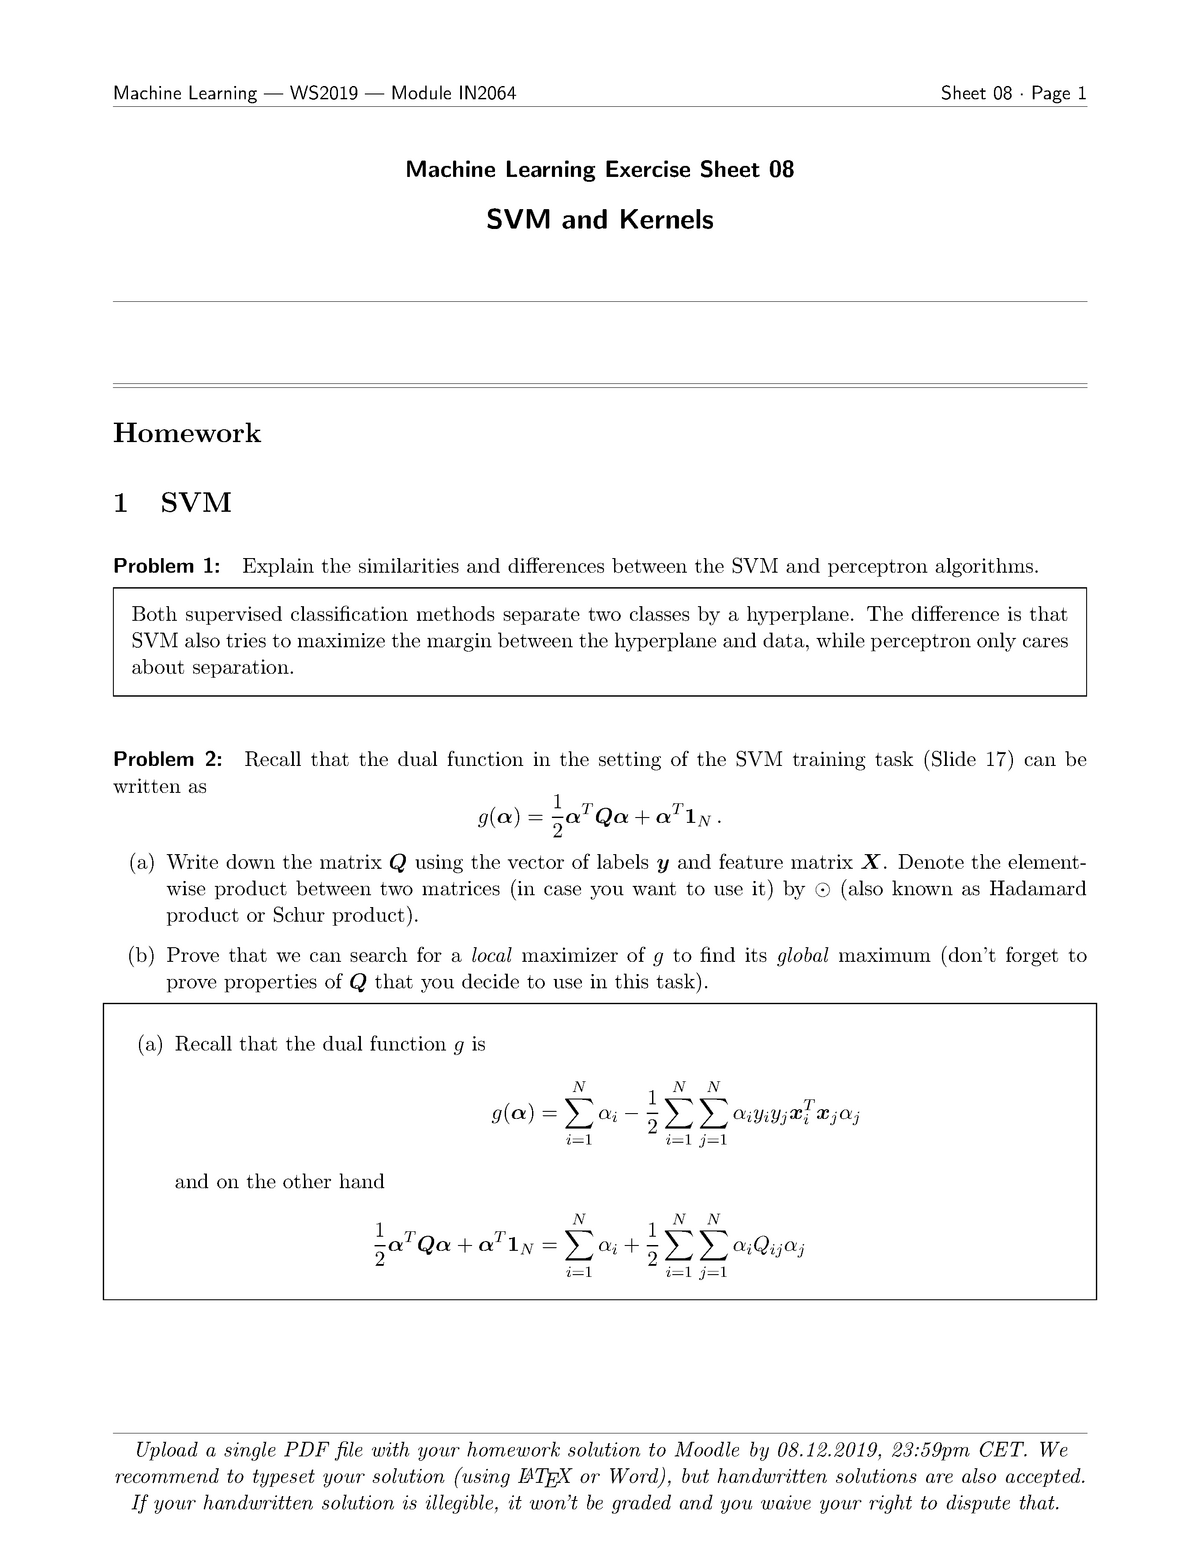 svm homework solution